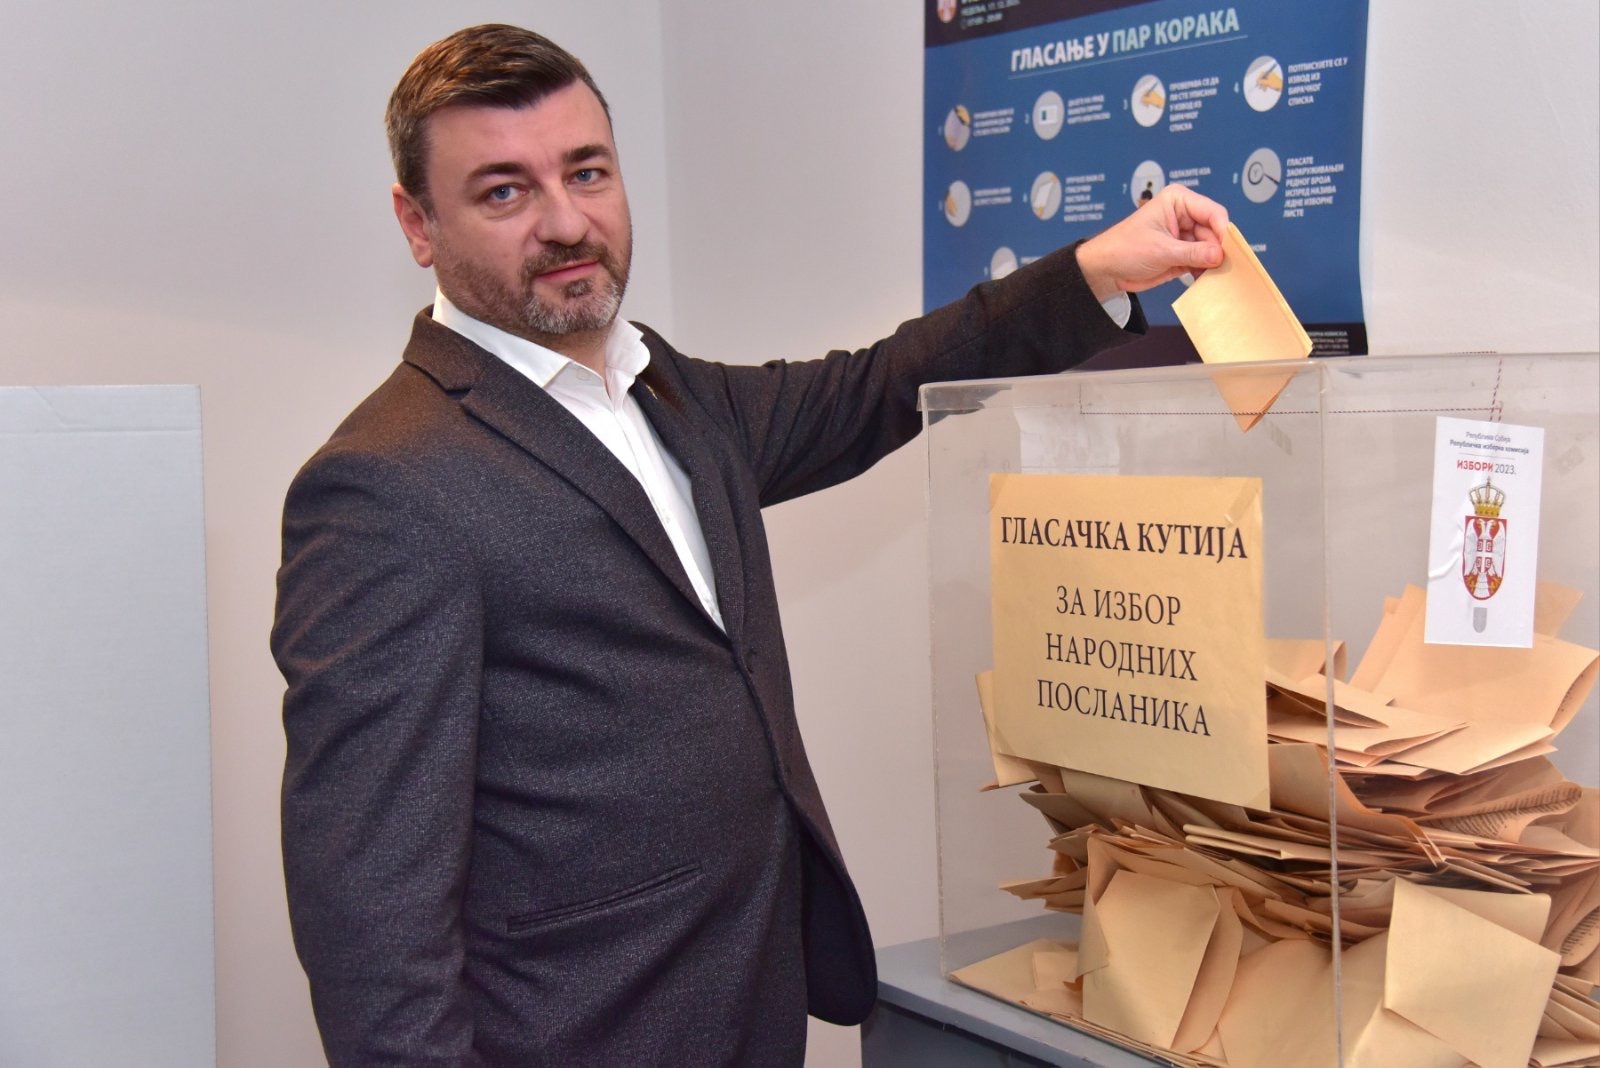 Kandidat za narodnog poslanika Ninoslav Erić glasao u Ćupriji